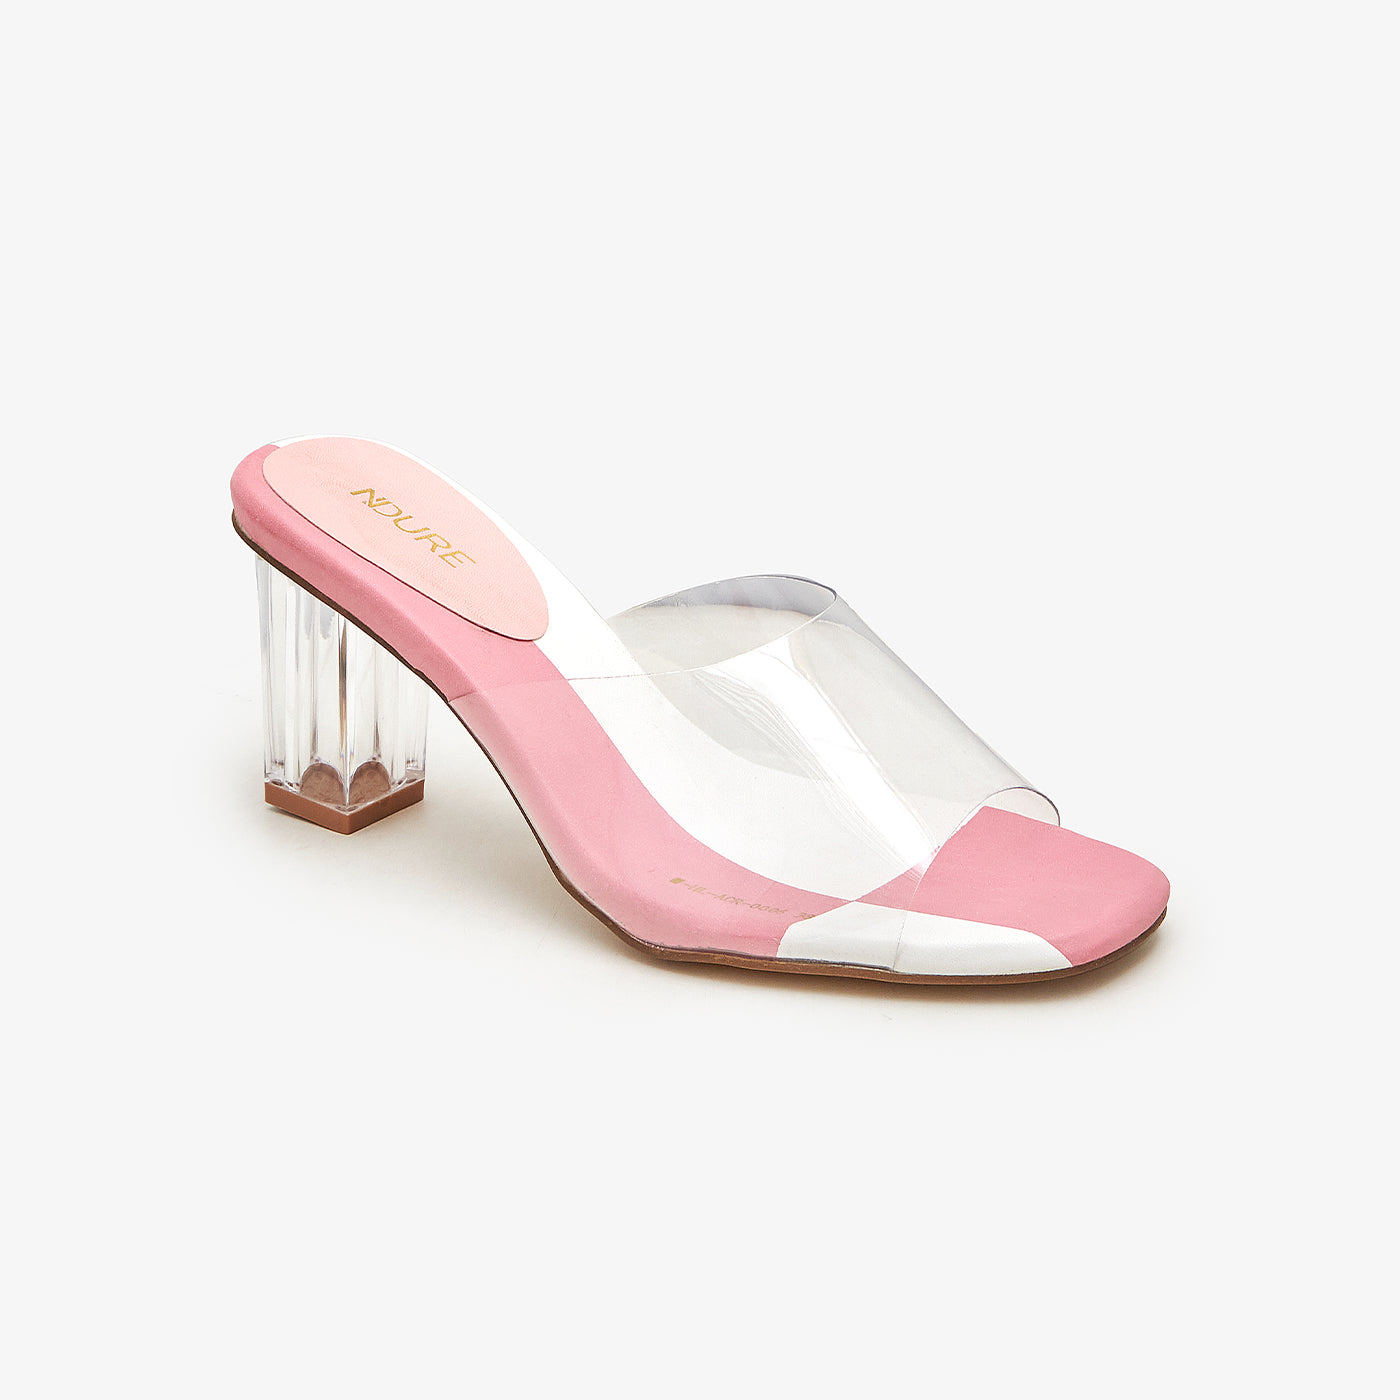 Yeezy Clear Heels for Women for sale | eBay